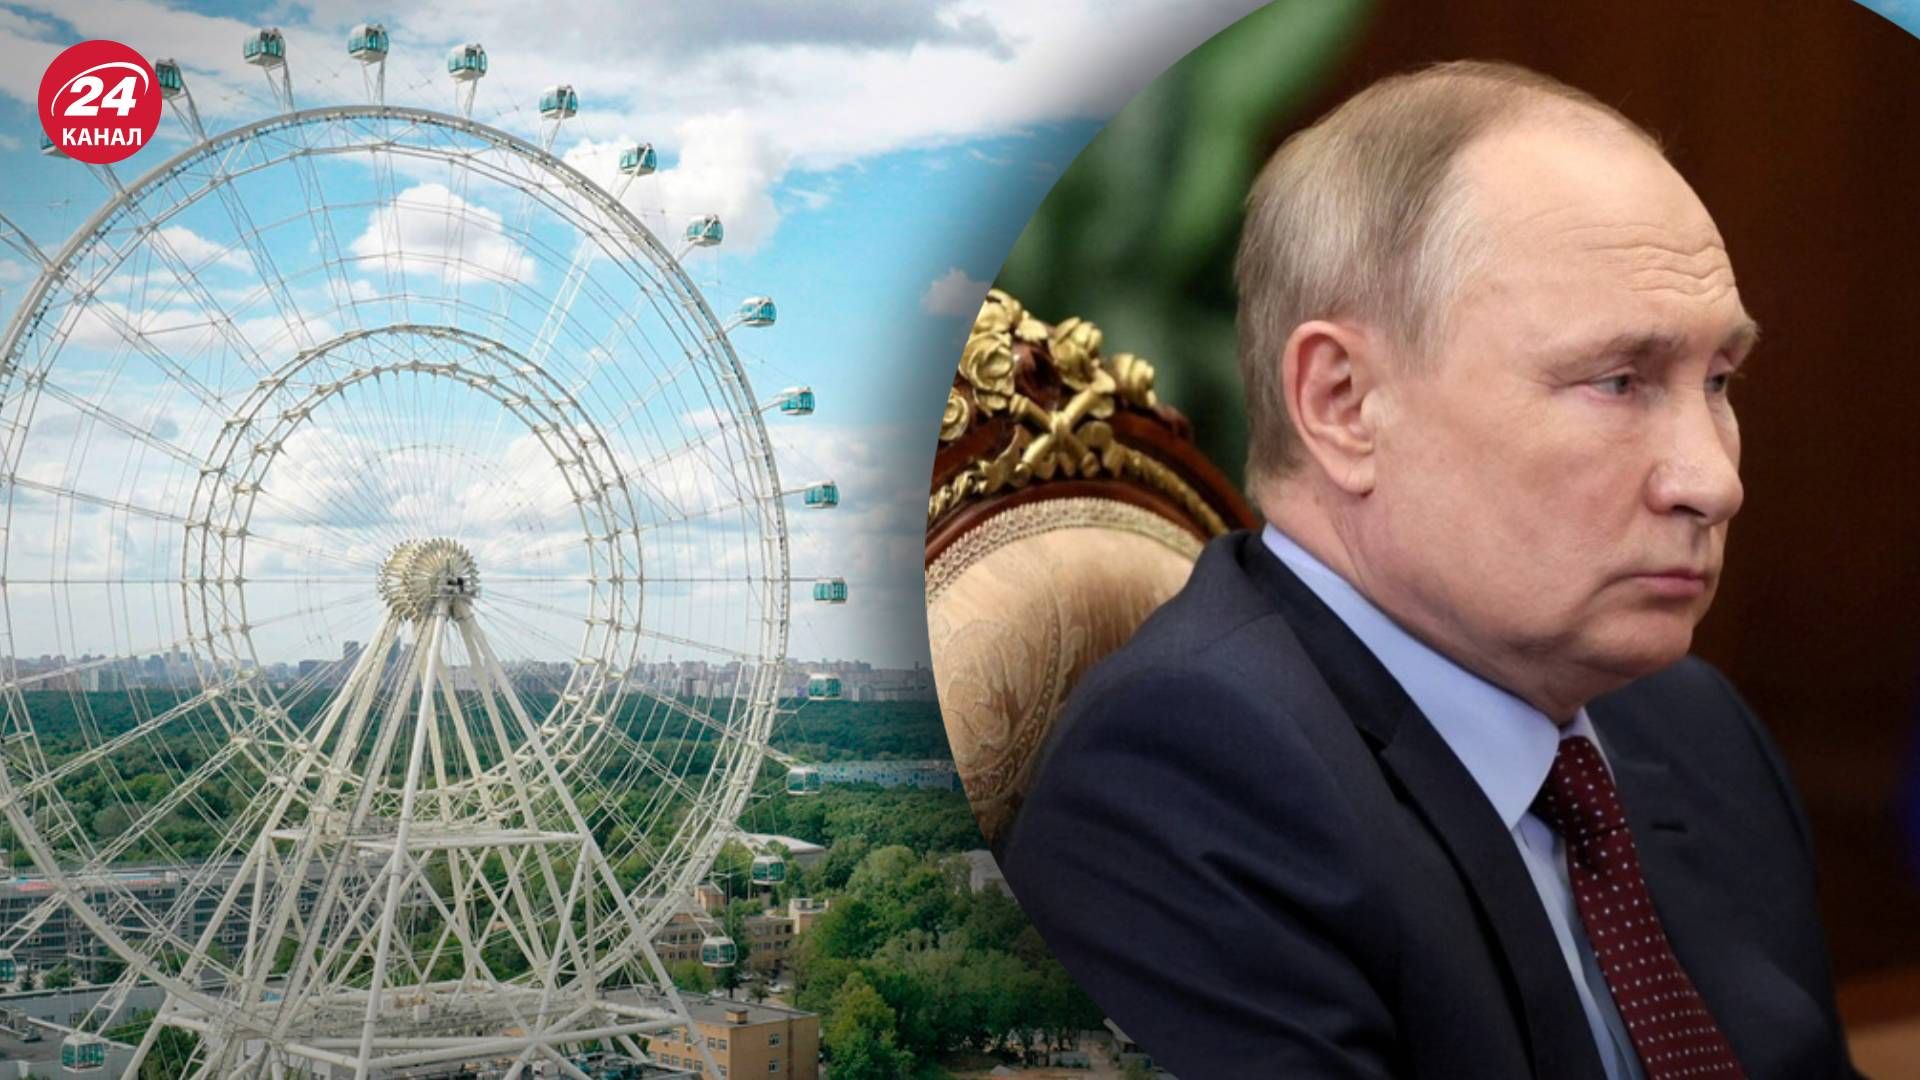 Сонце Москви - колесо огляду, яке відкривав путін, одразу ж зламалося